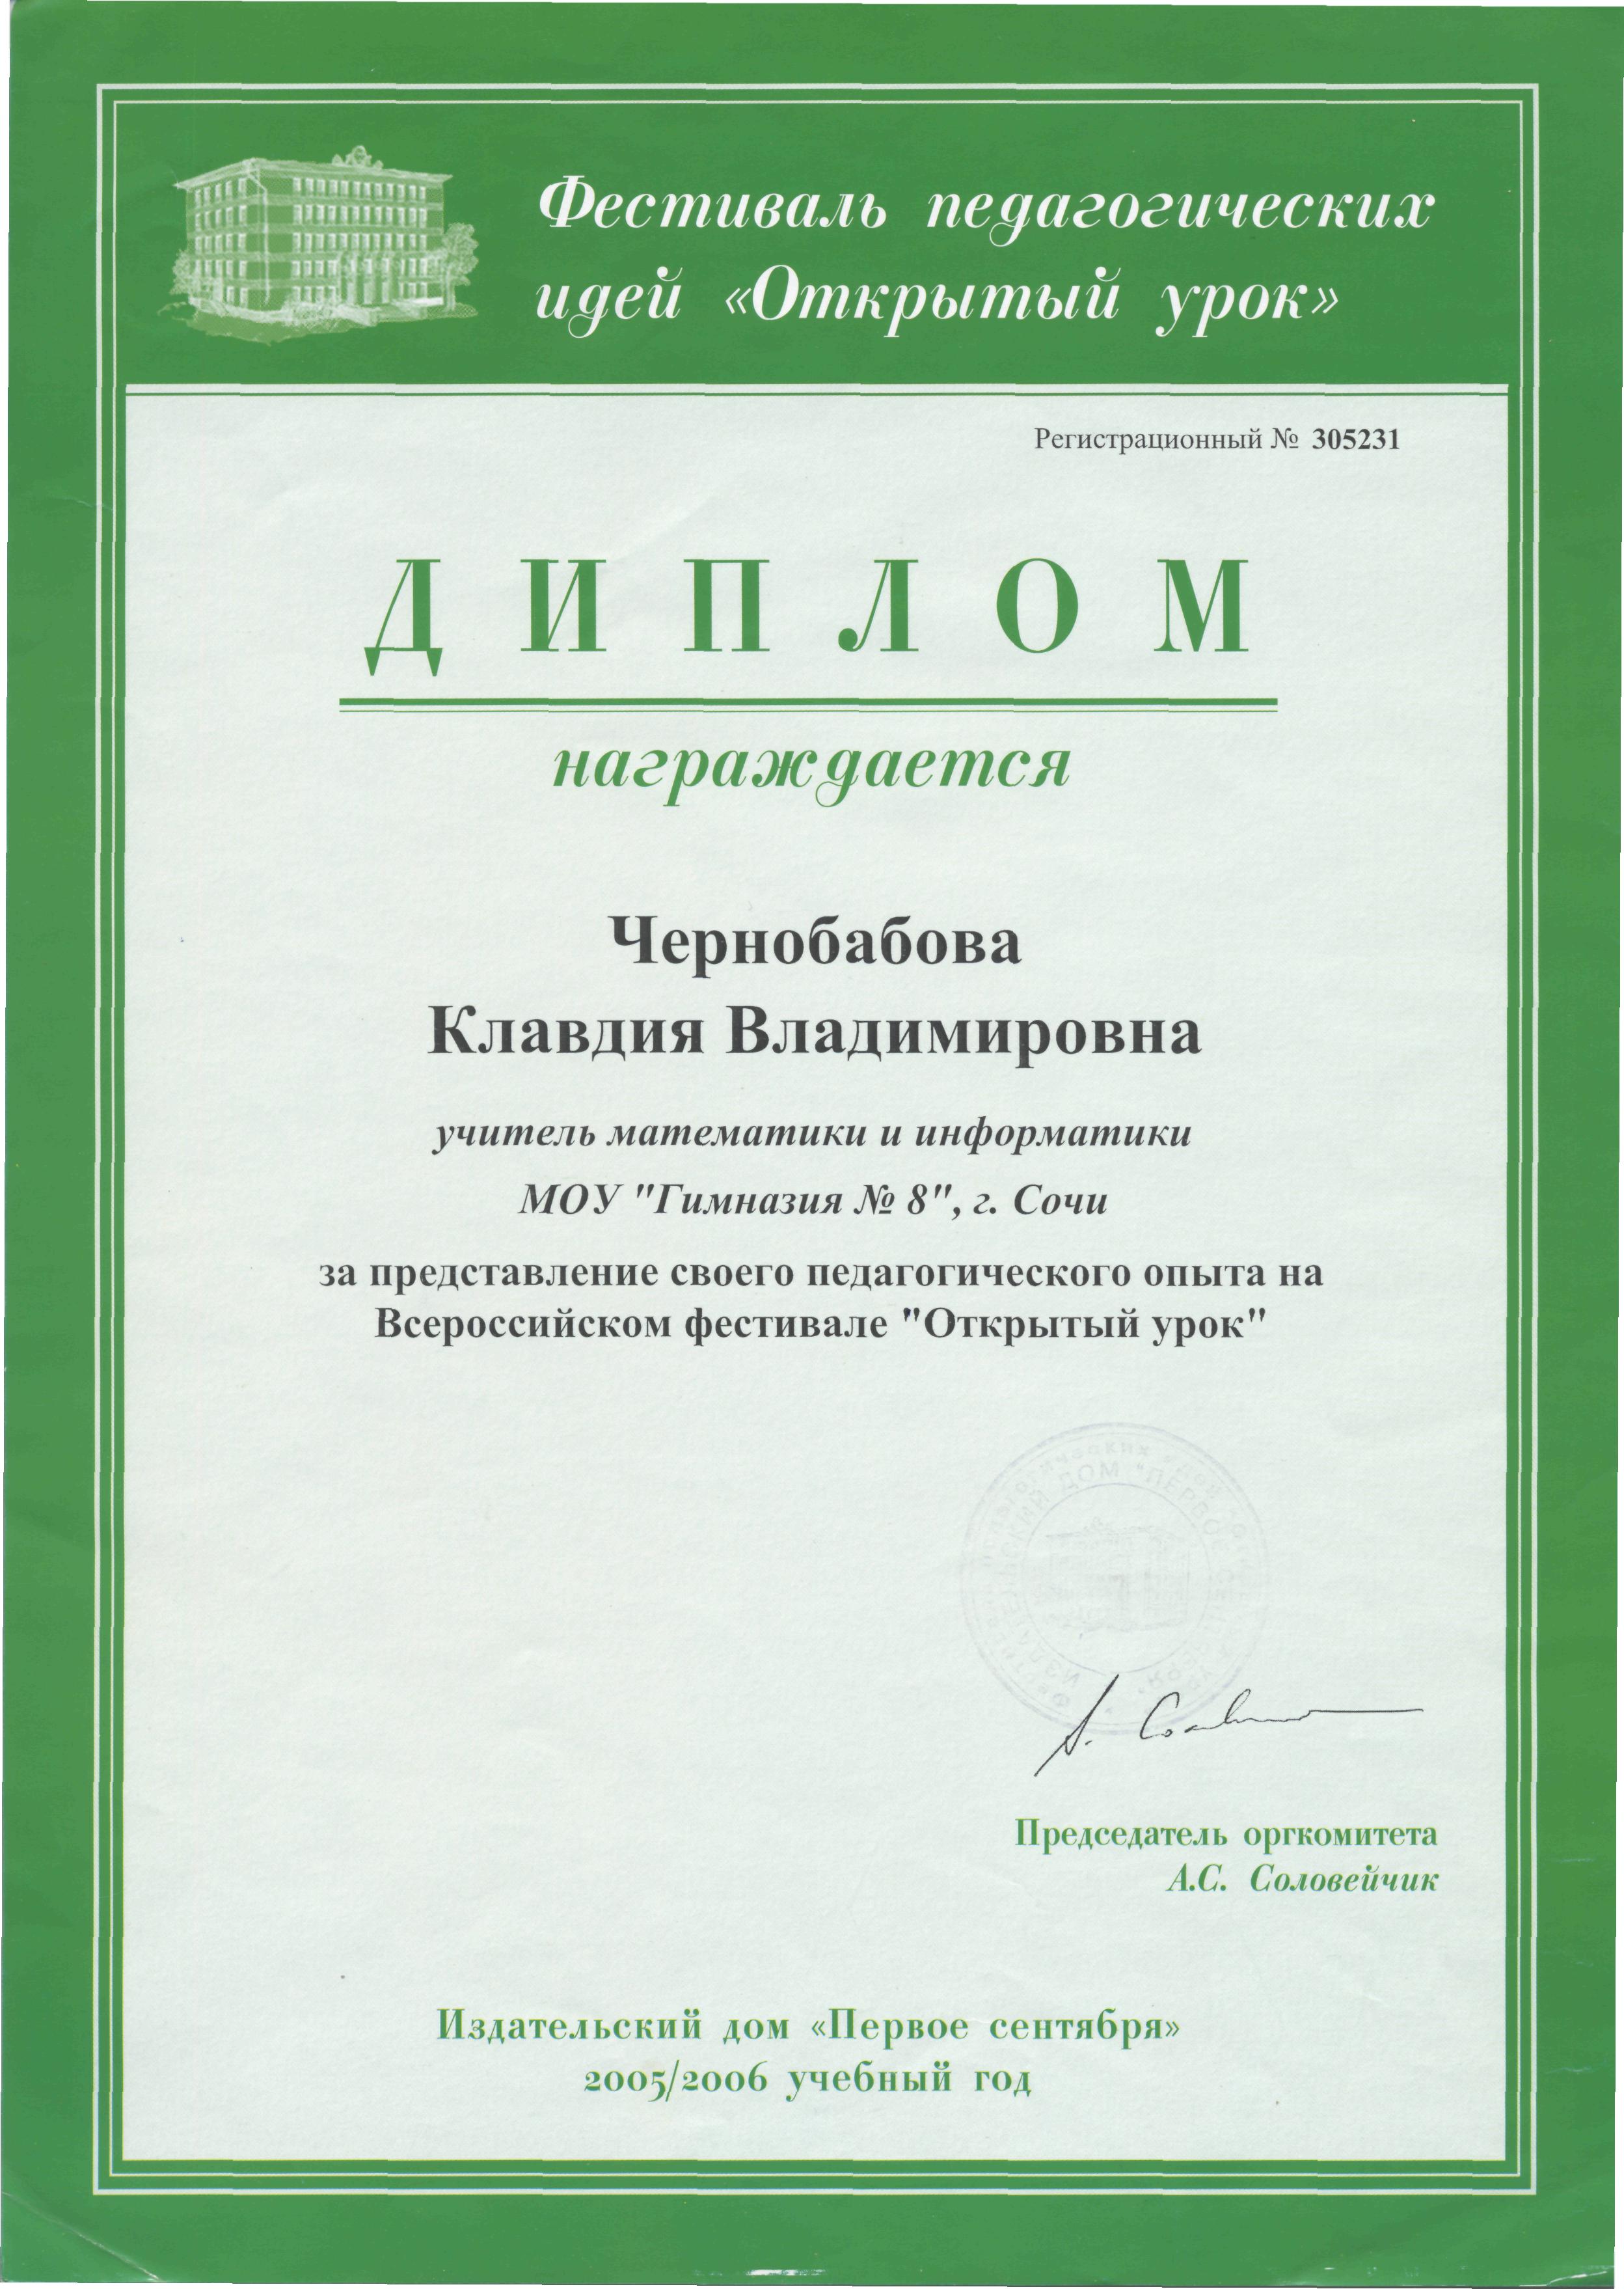 2005-06y-Dipl-Solov